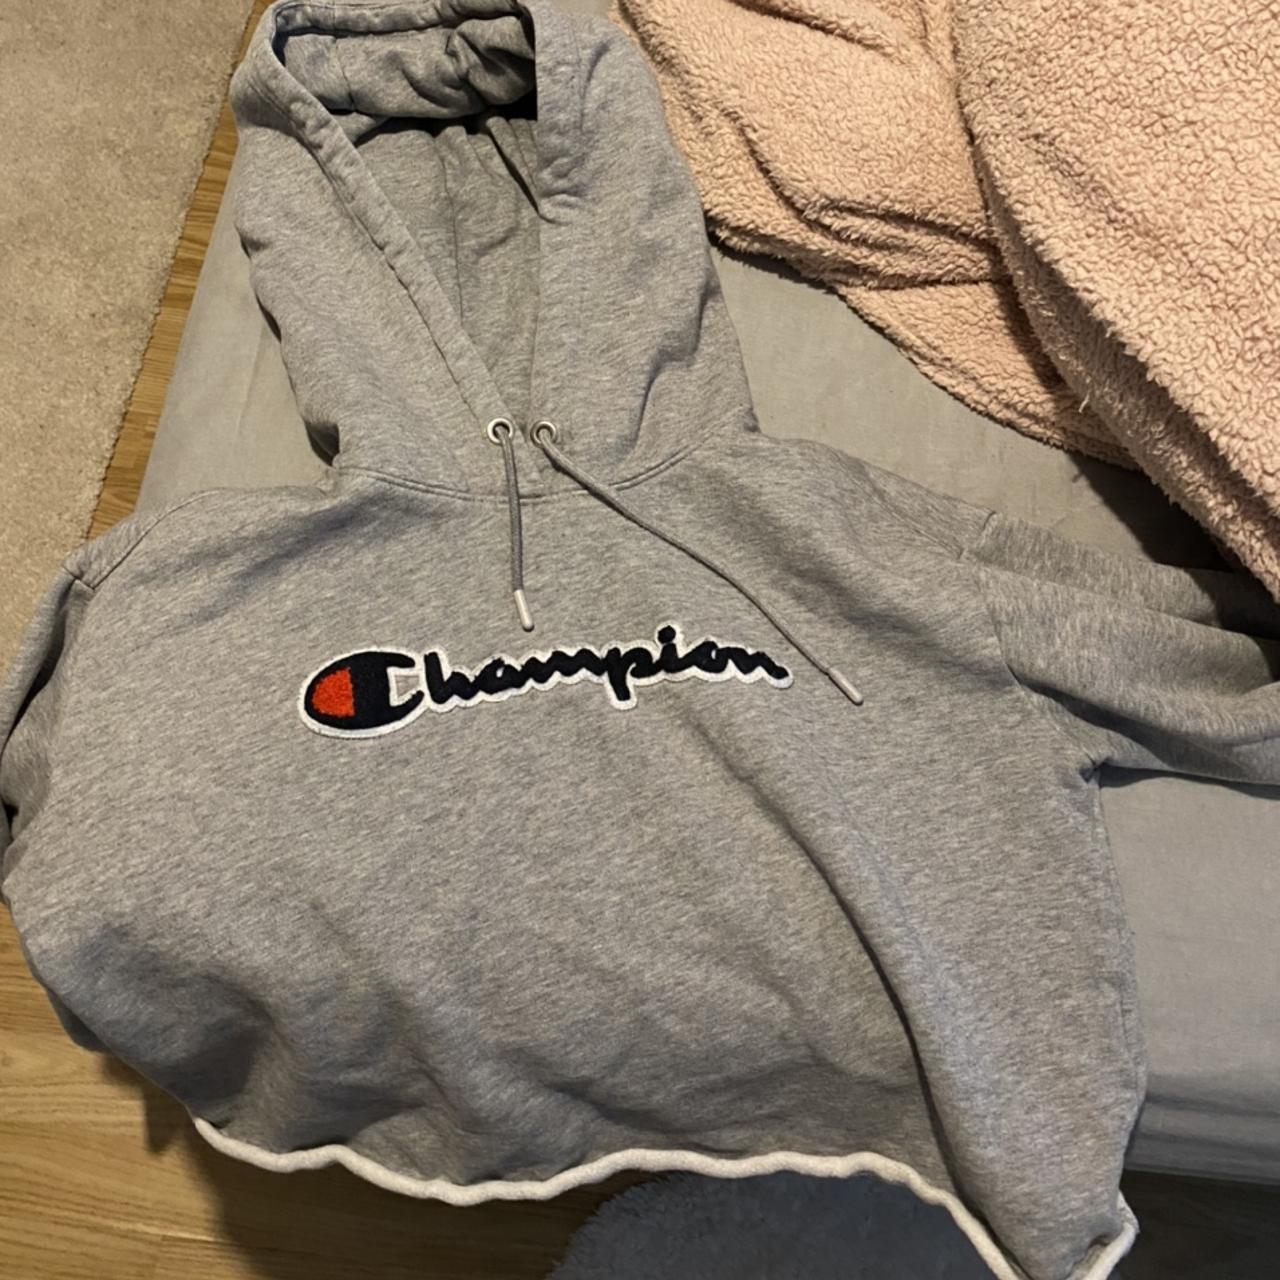 Grey champion leggings size medium worn a few times - Depop